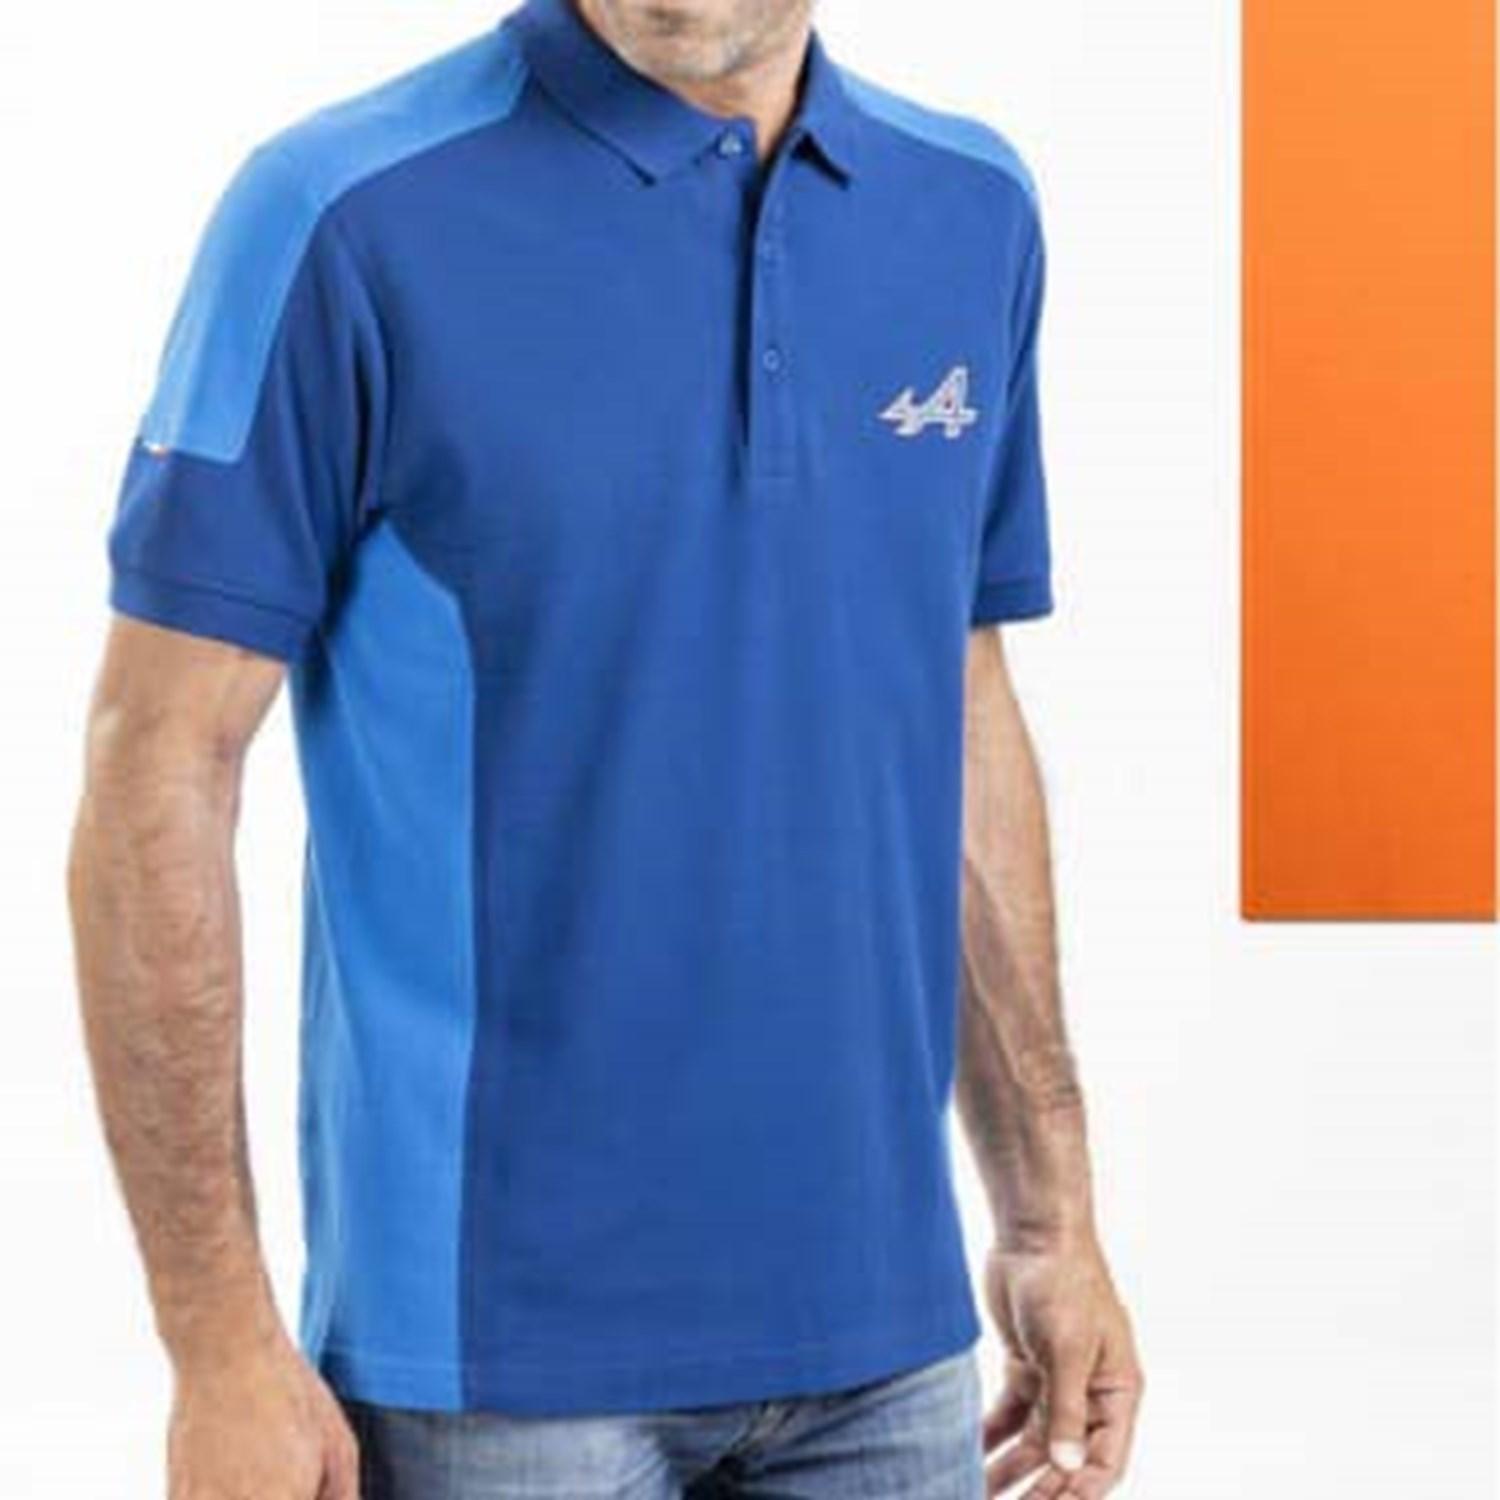 Men's Blue Polo Shirt